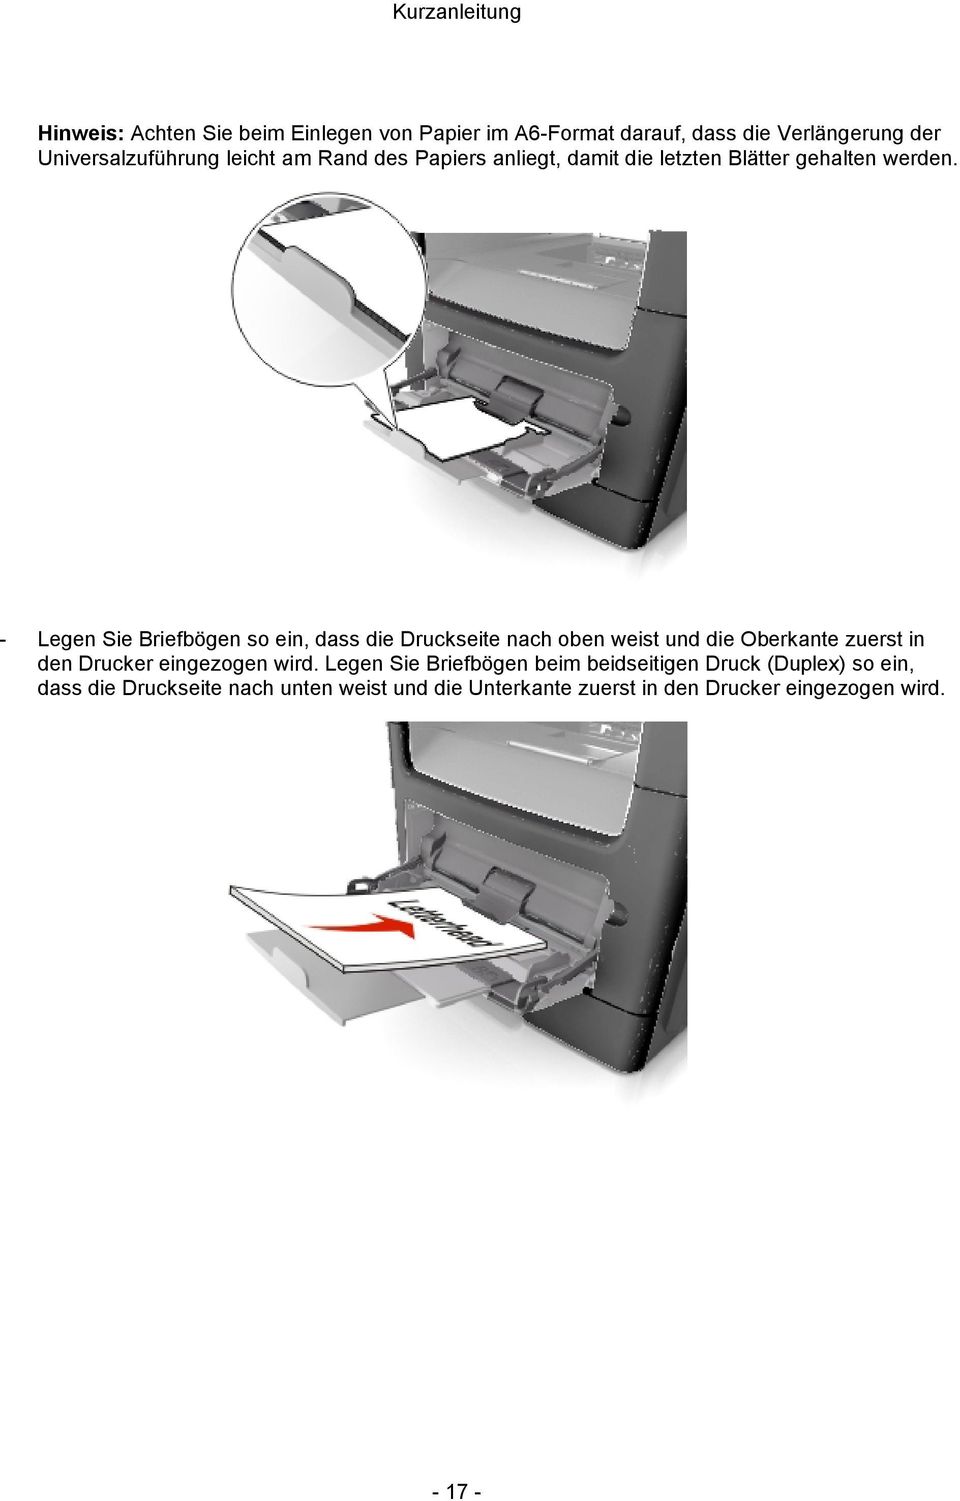 - Legen Sie Briefbögen so ein, dass die Druckseite nach oben weist und die Oberkante zuerst in den Drucker eingezogen